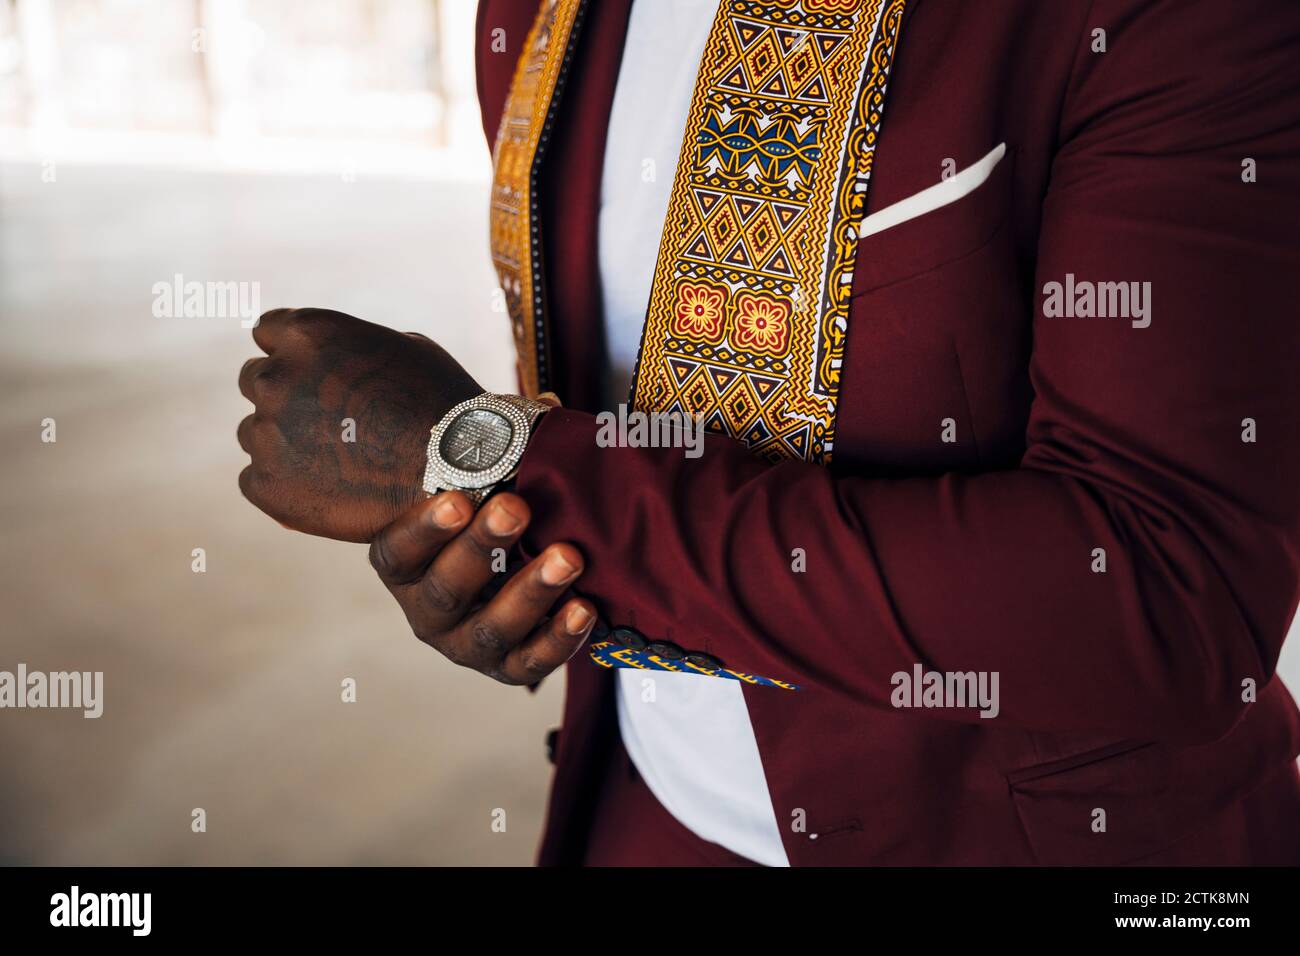 Jeune homme portant un kente traditionnel en costume bâtiment Banque D'Images